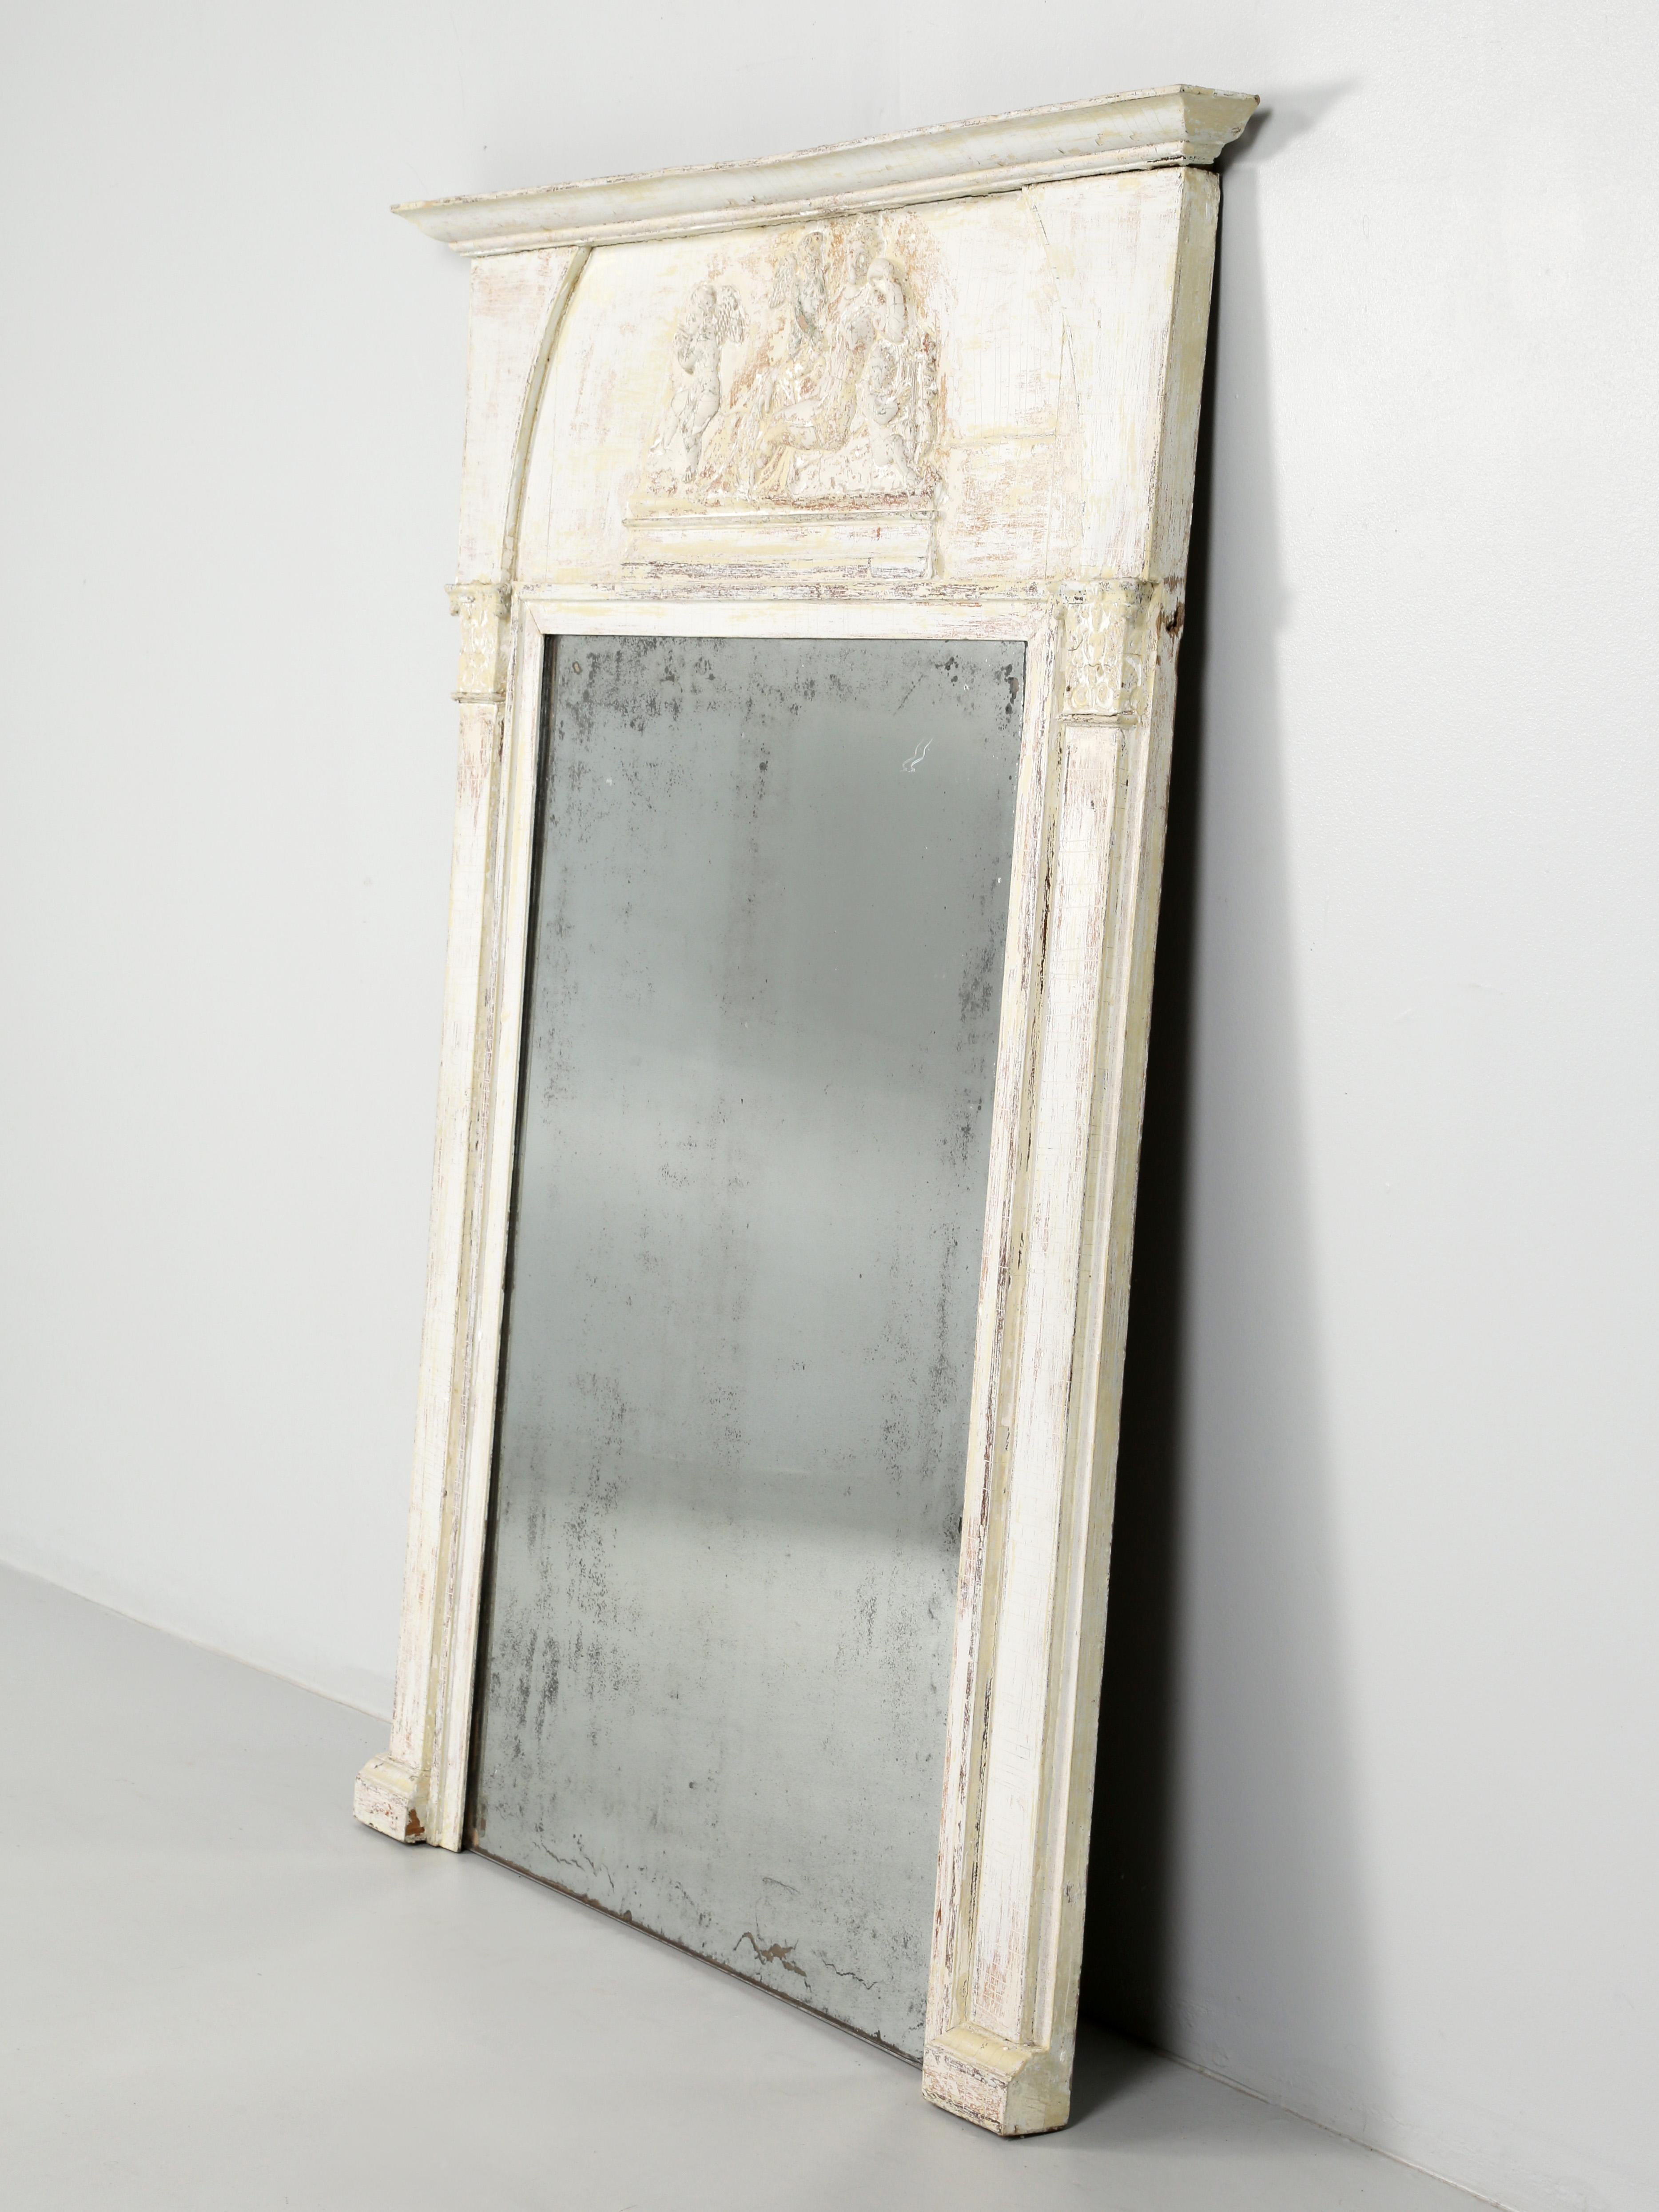 Antiker französischer bemalter Trumeau-Spiegel, der ursprünglich ein mit einem Spiegel bedeckter Mittelpfeiler war, der eine große Türöffnung stützte. Um 1800 wurden die Trumeau-Spiegel in Frankreich zur Dekoration des Kamins über dem Mantel. Unser